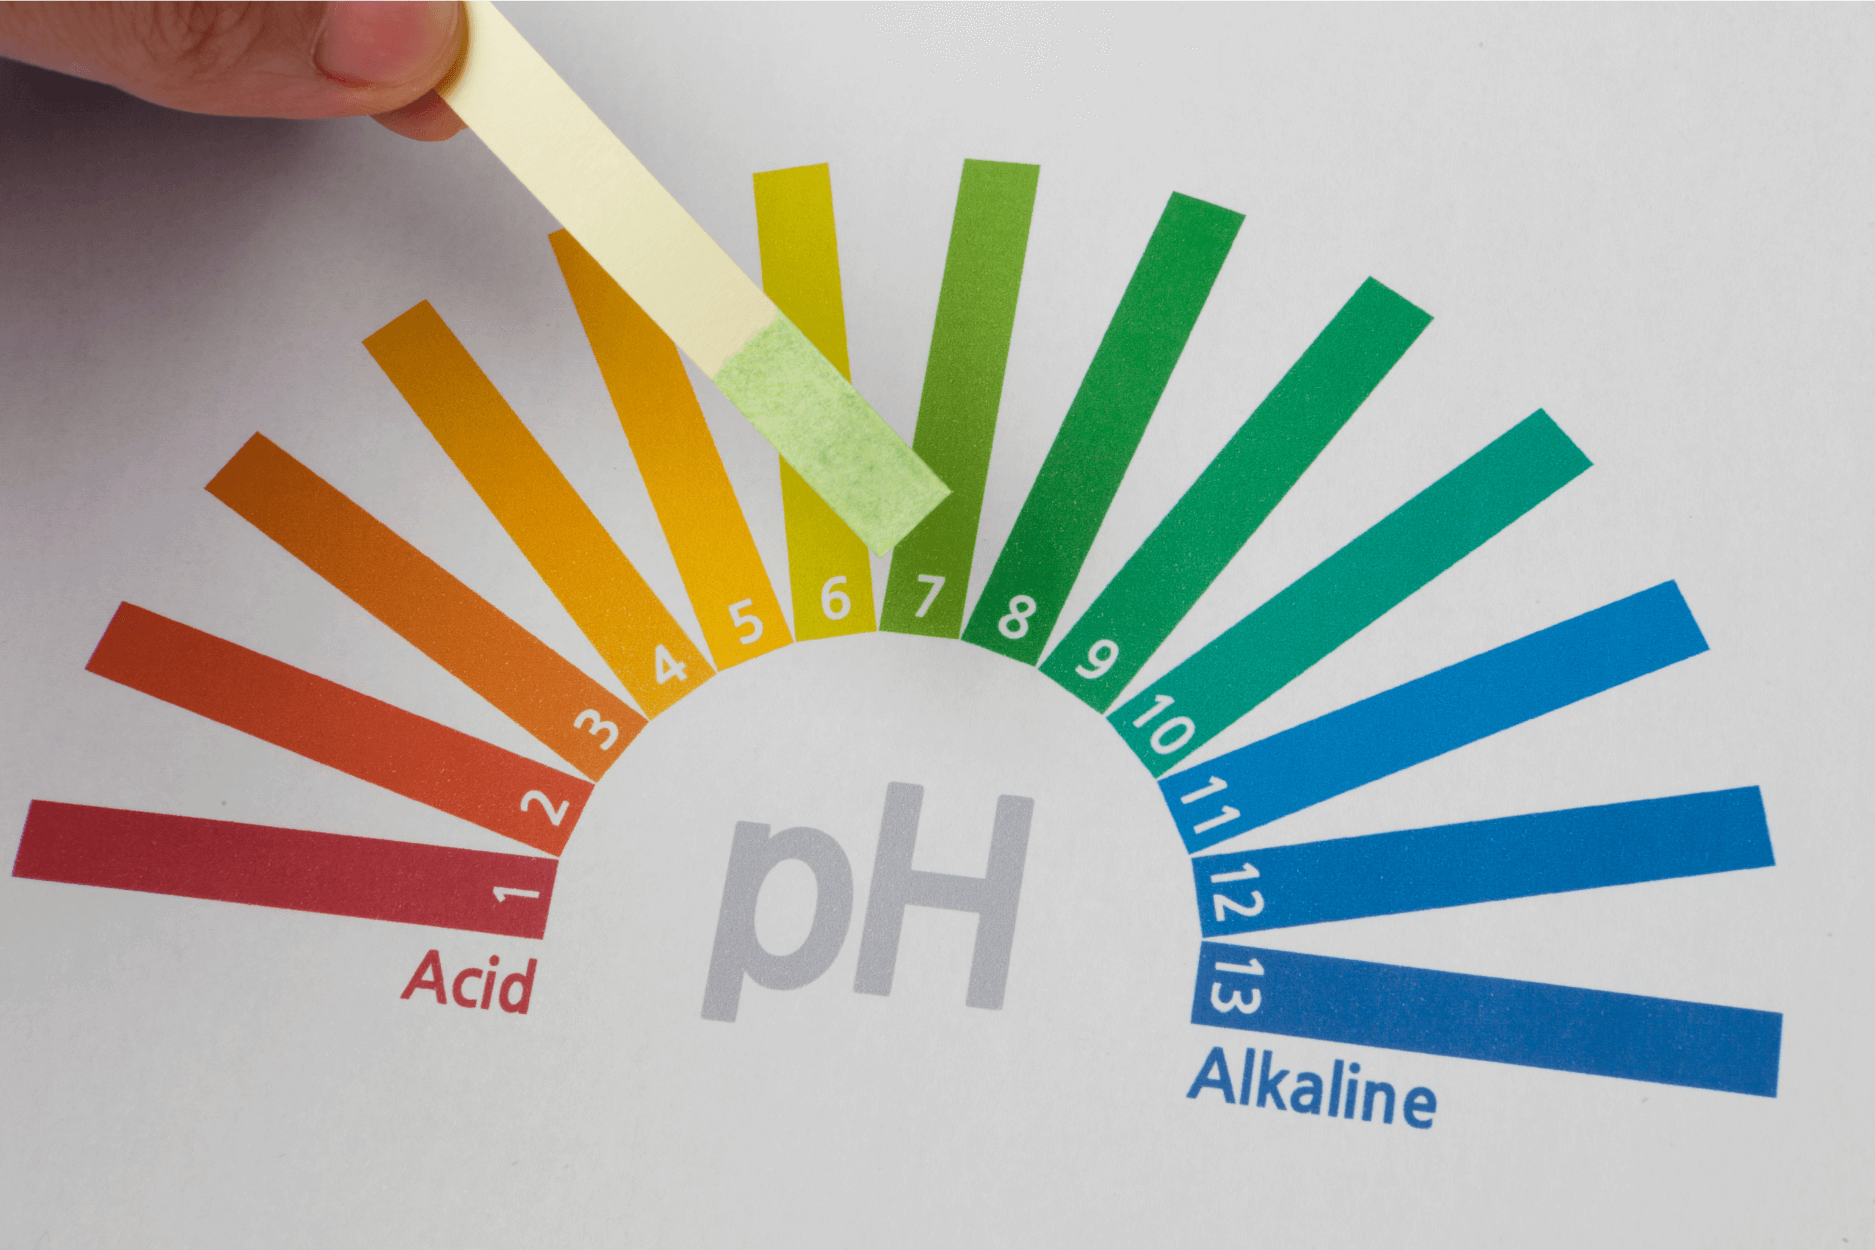 Chọn ddvs bác sĩ khuyên dùng có độ pH phù hợp